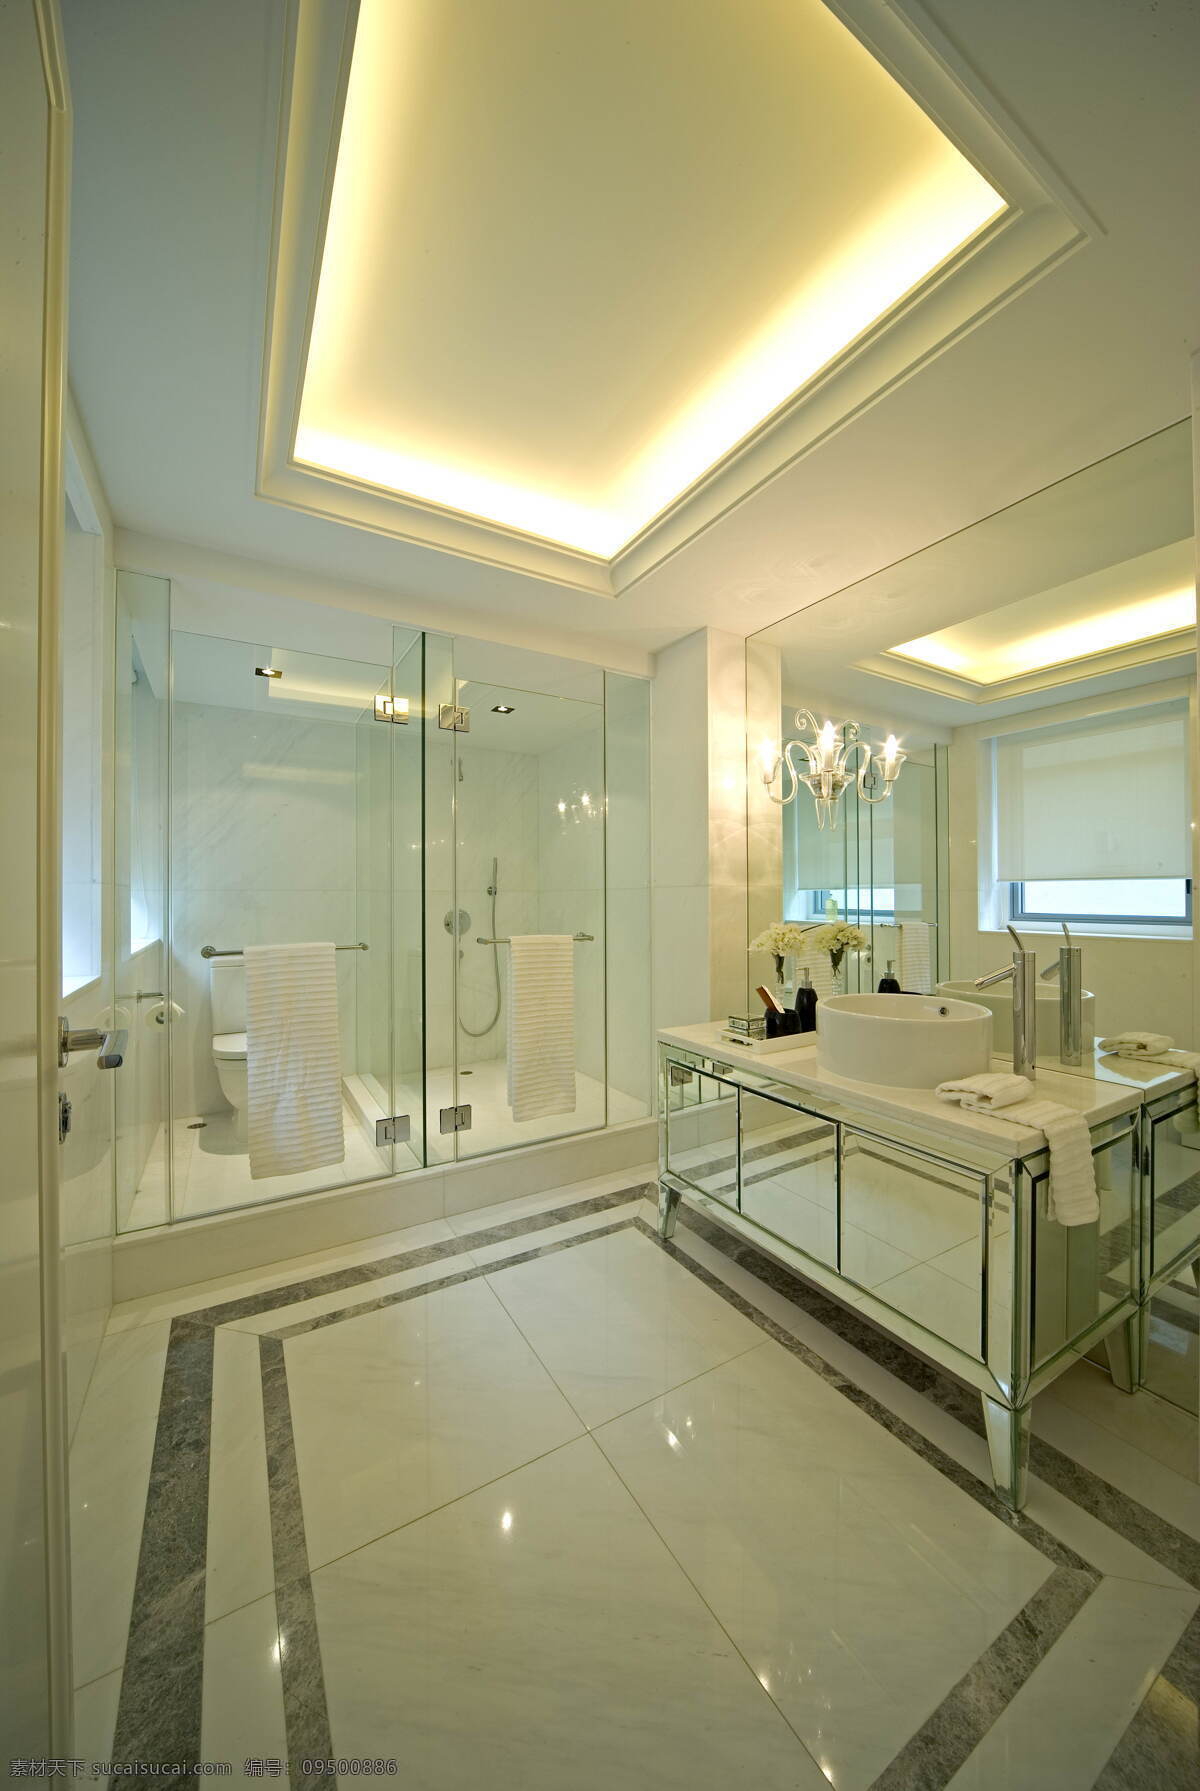 室内 浴室 现代 豪华 装修 效果图 陶瓷地板 透明 玻璃 门 白色 陶瓷 洗手台 黄色灯光 方形吊顶